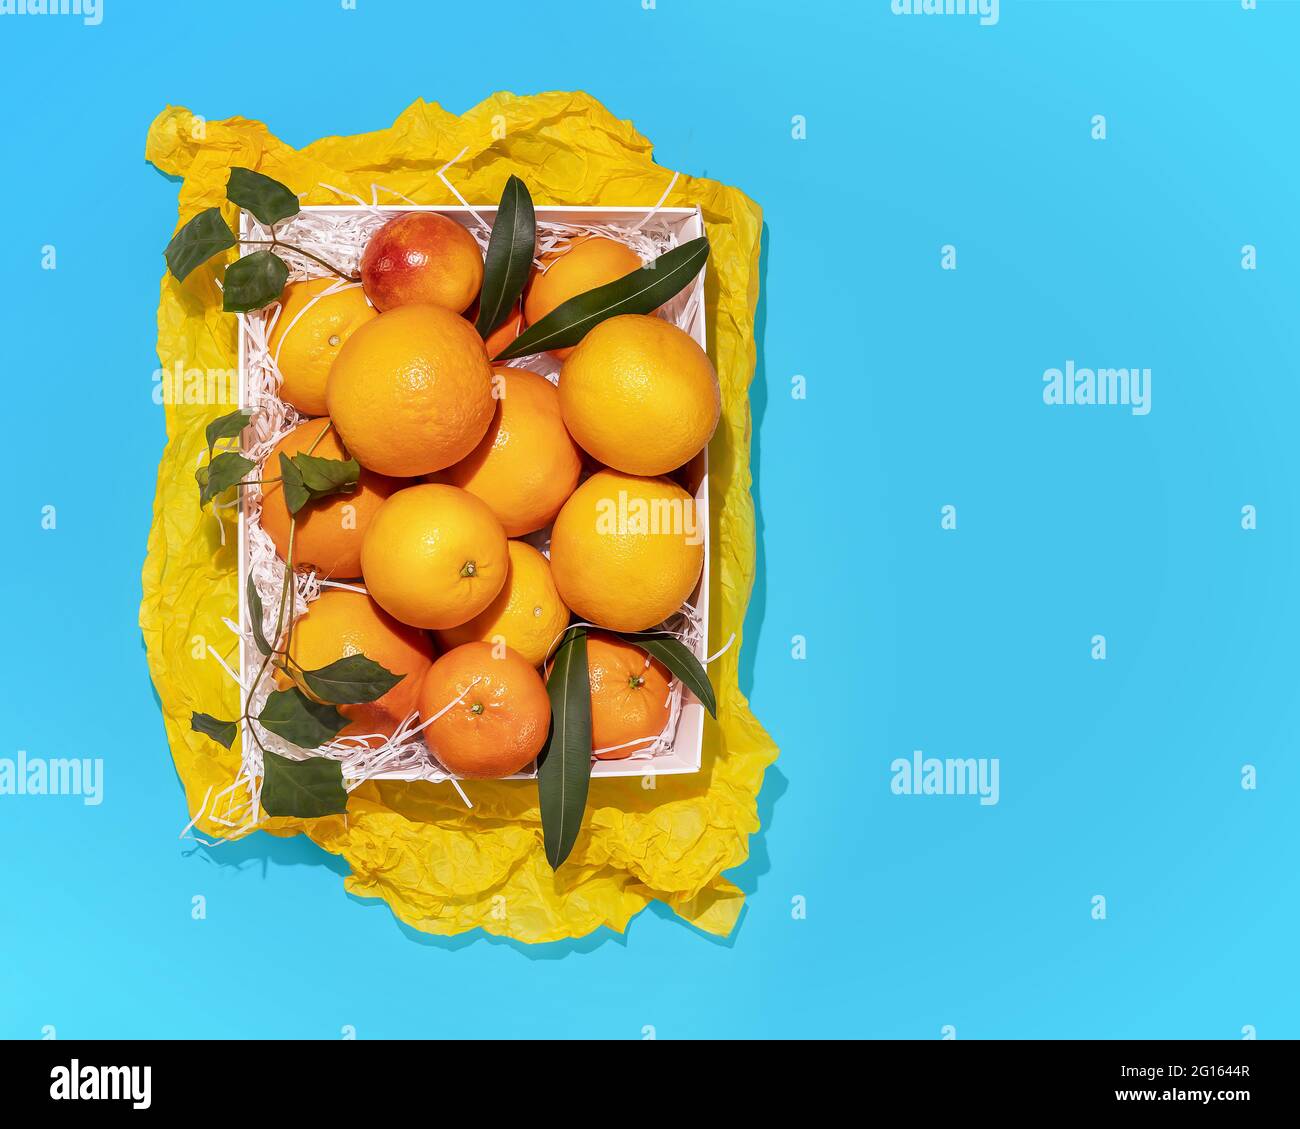 Horizontale, sommerliche Fruchtkomposition mit frischen Orangen in einer weißen Schachtel auf blauem Hintergrund mit Kopierraum. Gesund, würzen, landwirtschaftliche Lebensmittel Stockfoto